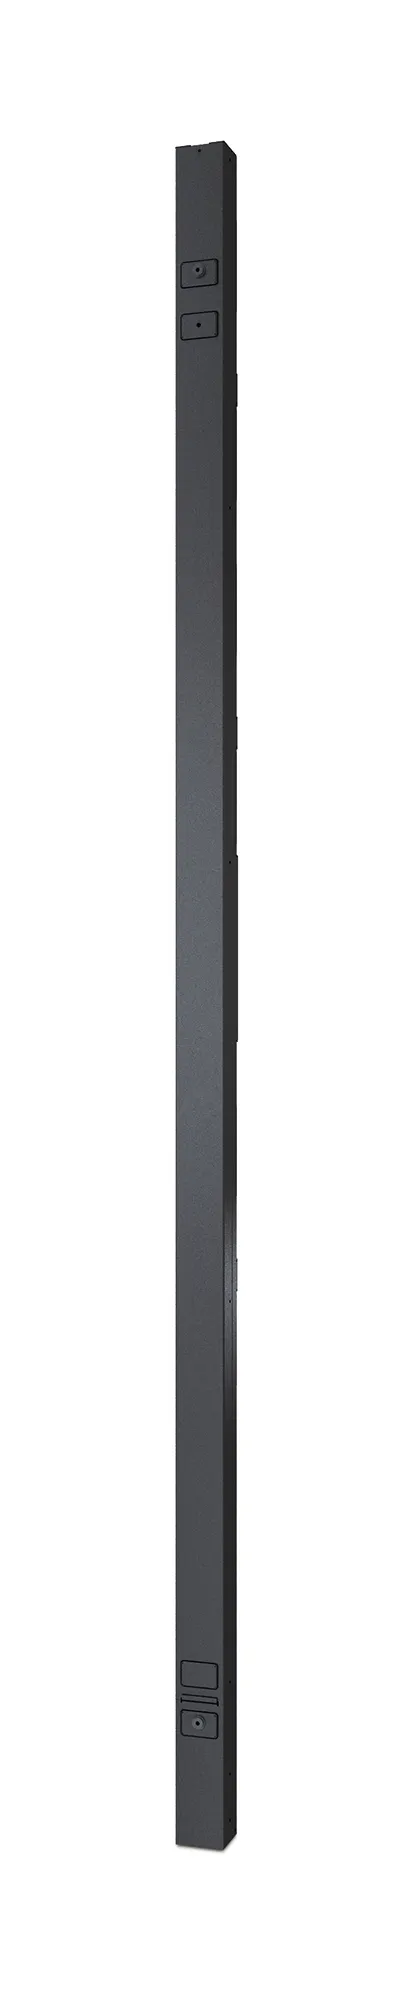 Vente APC Rack PDU 2G Metered-by-Outlet ZeroU 11.0kW 230V APC au meilleur prix - visuel 4